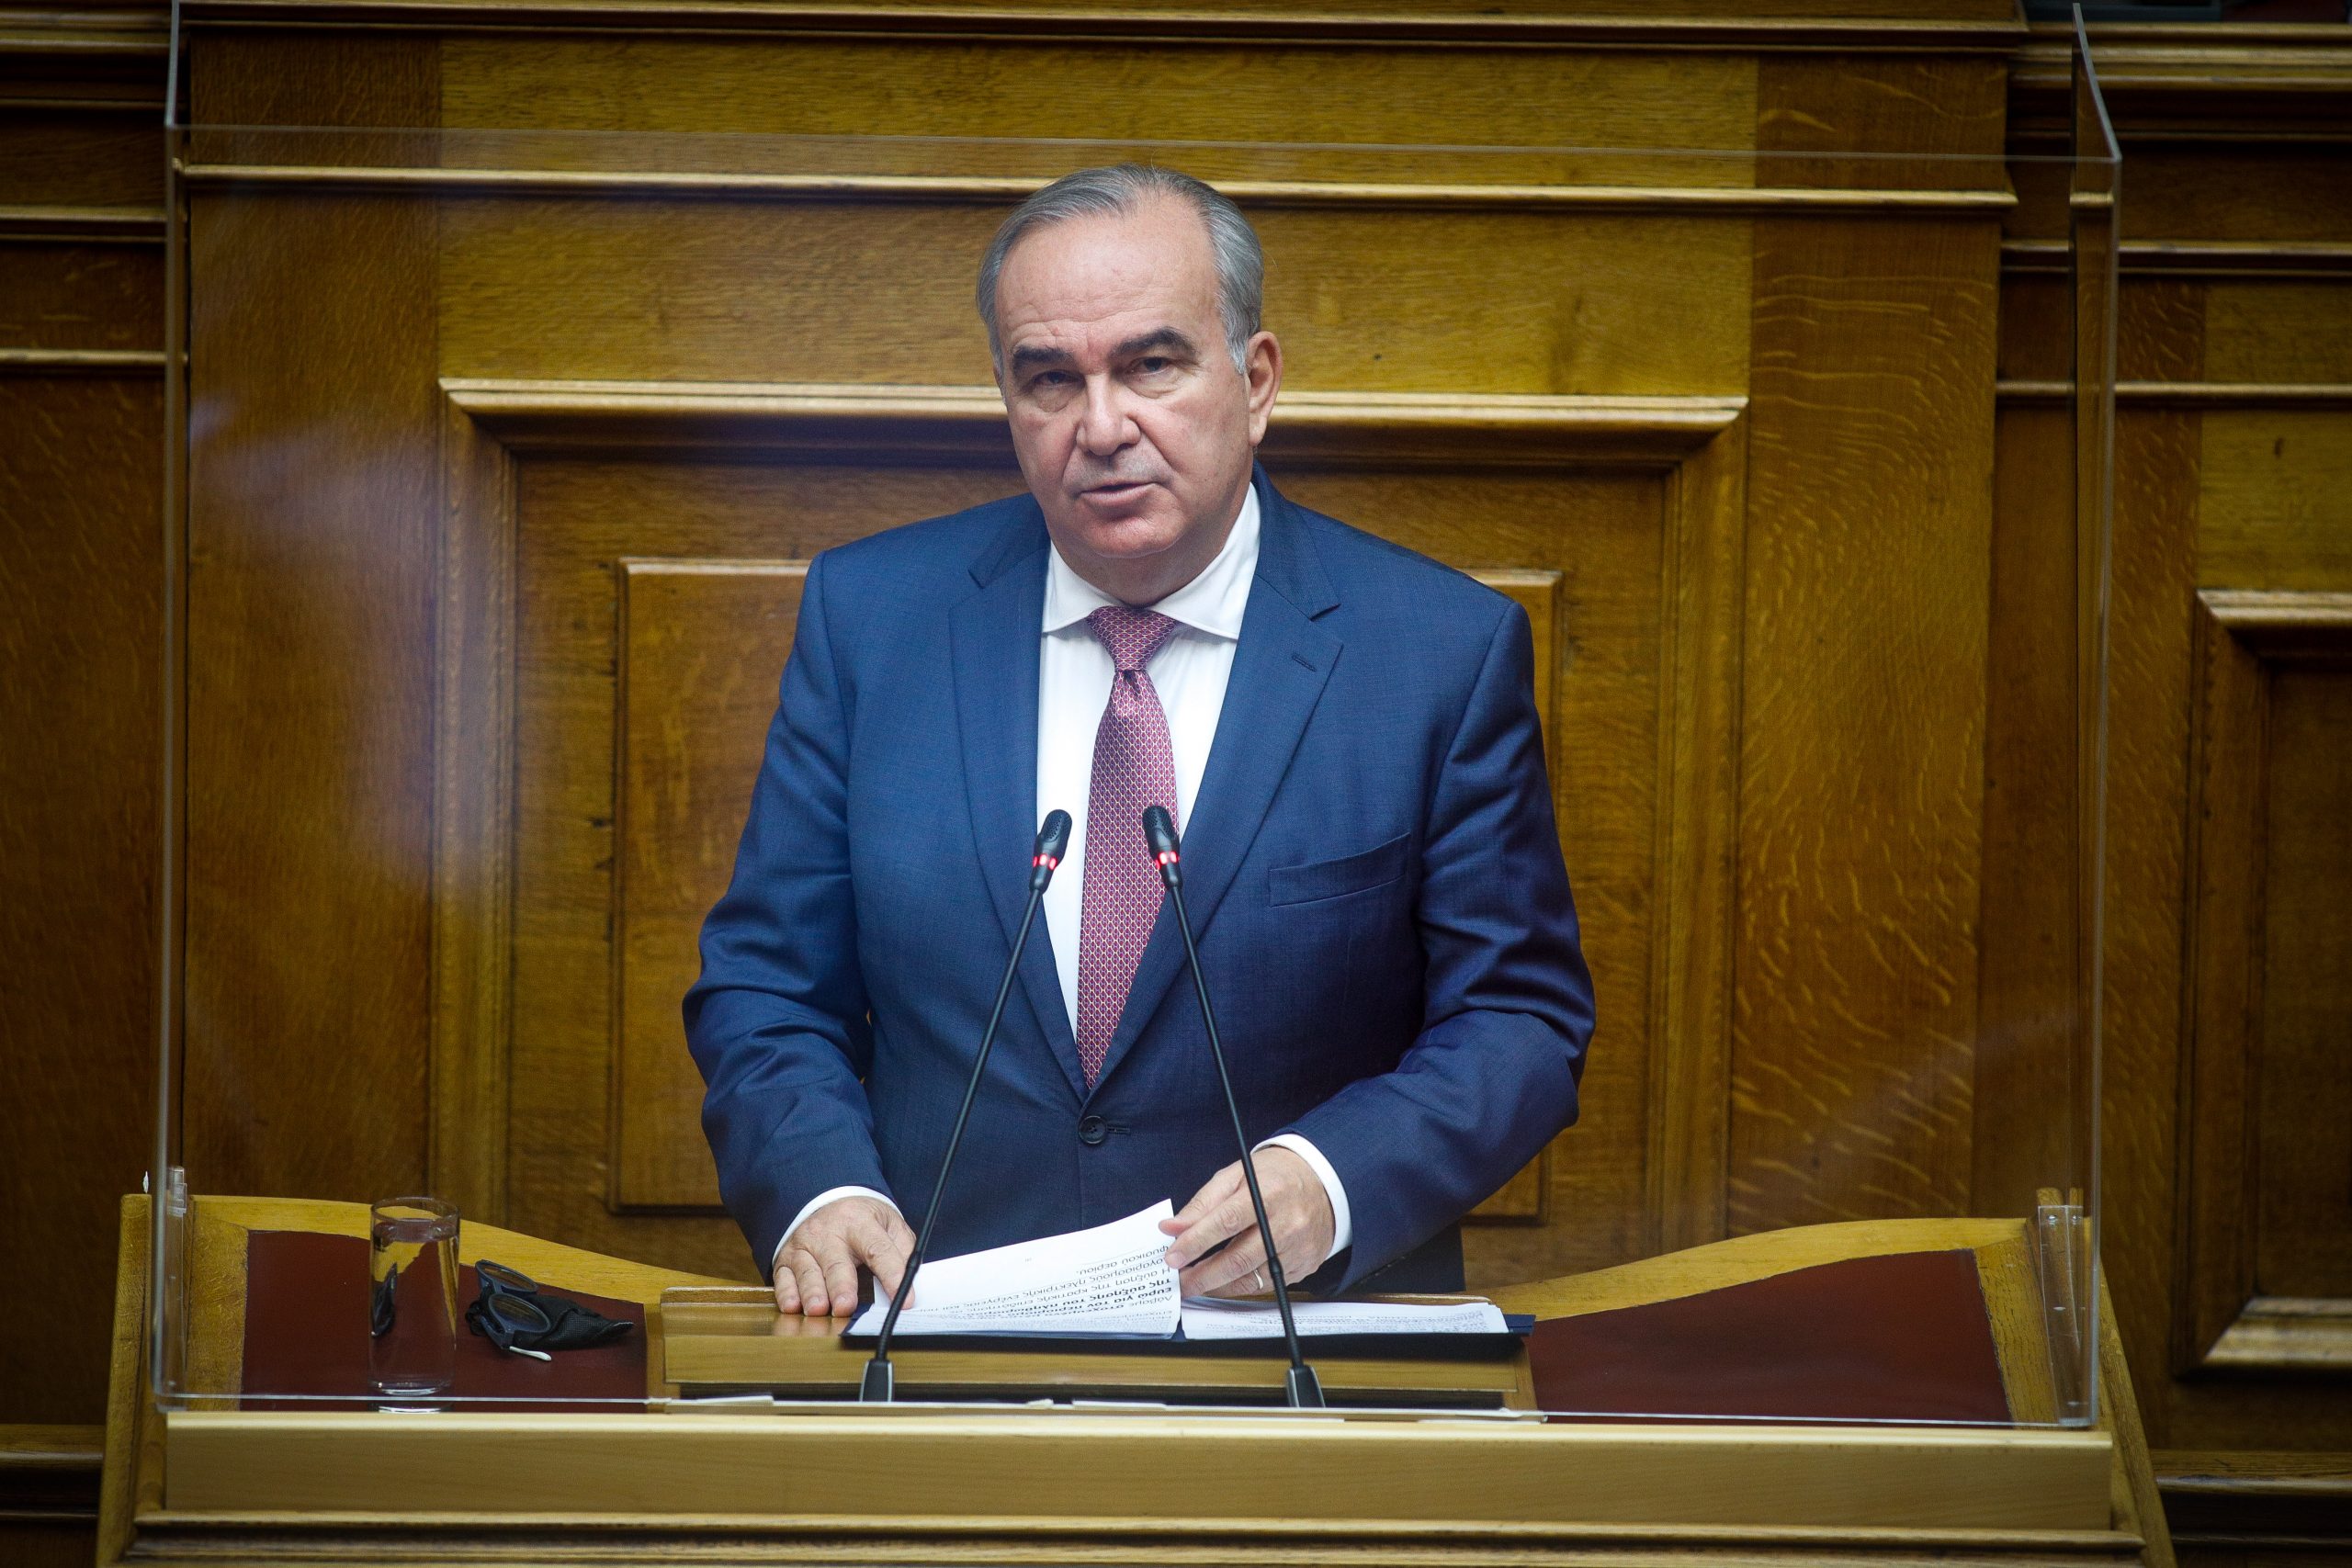 Ομιλία του Αναπληρωτή Υπουργού Ανάπτυξης και Επενδύσεων κ. Νίκου Παπαθανάση στη Βουλή των Ελλήνων για την κύρωση του Κρατικού Προϋπολογισμού 2022